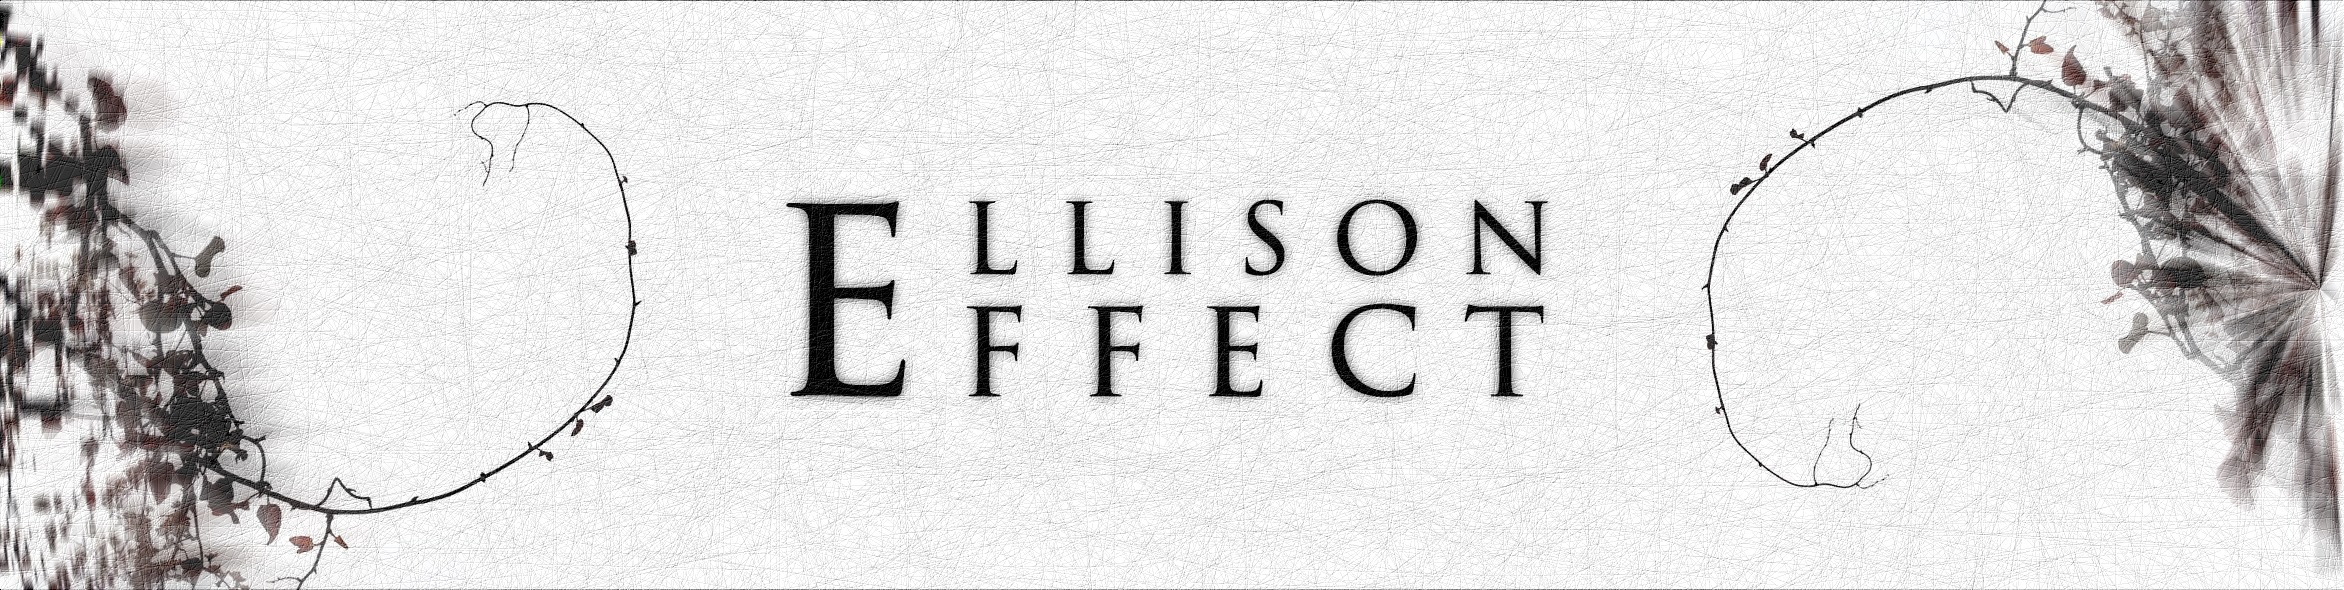 ELLISON EFFECT picture